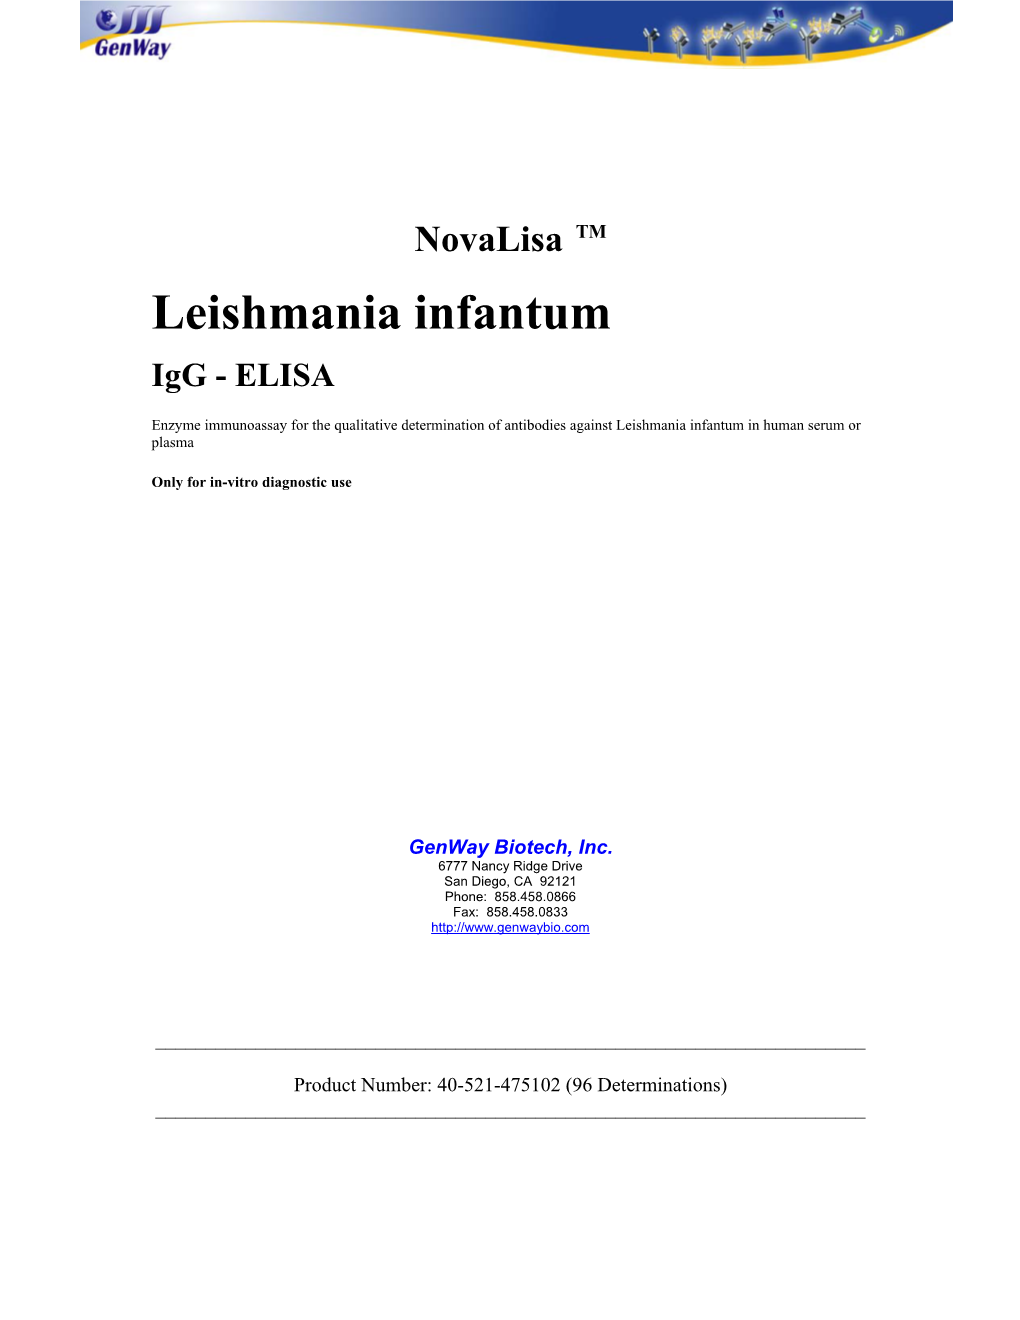 Leishmania Infantum